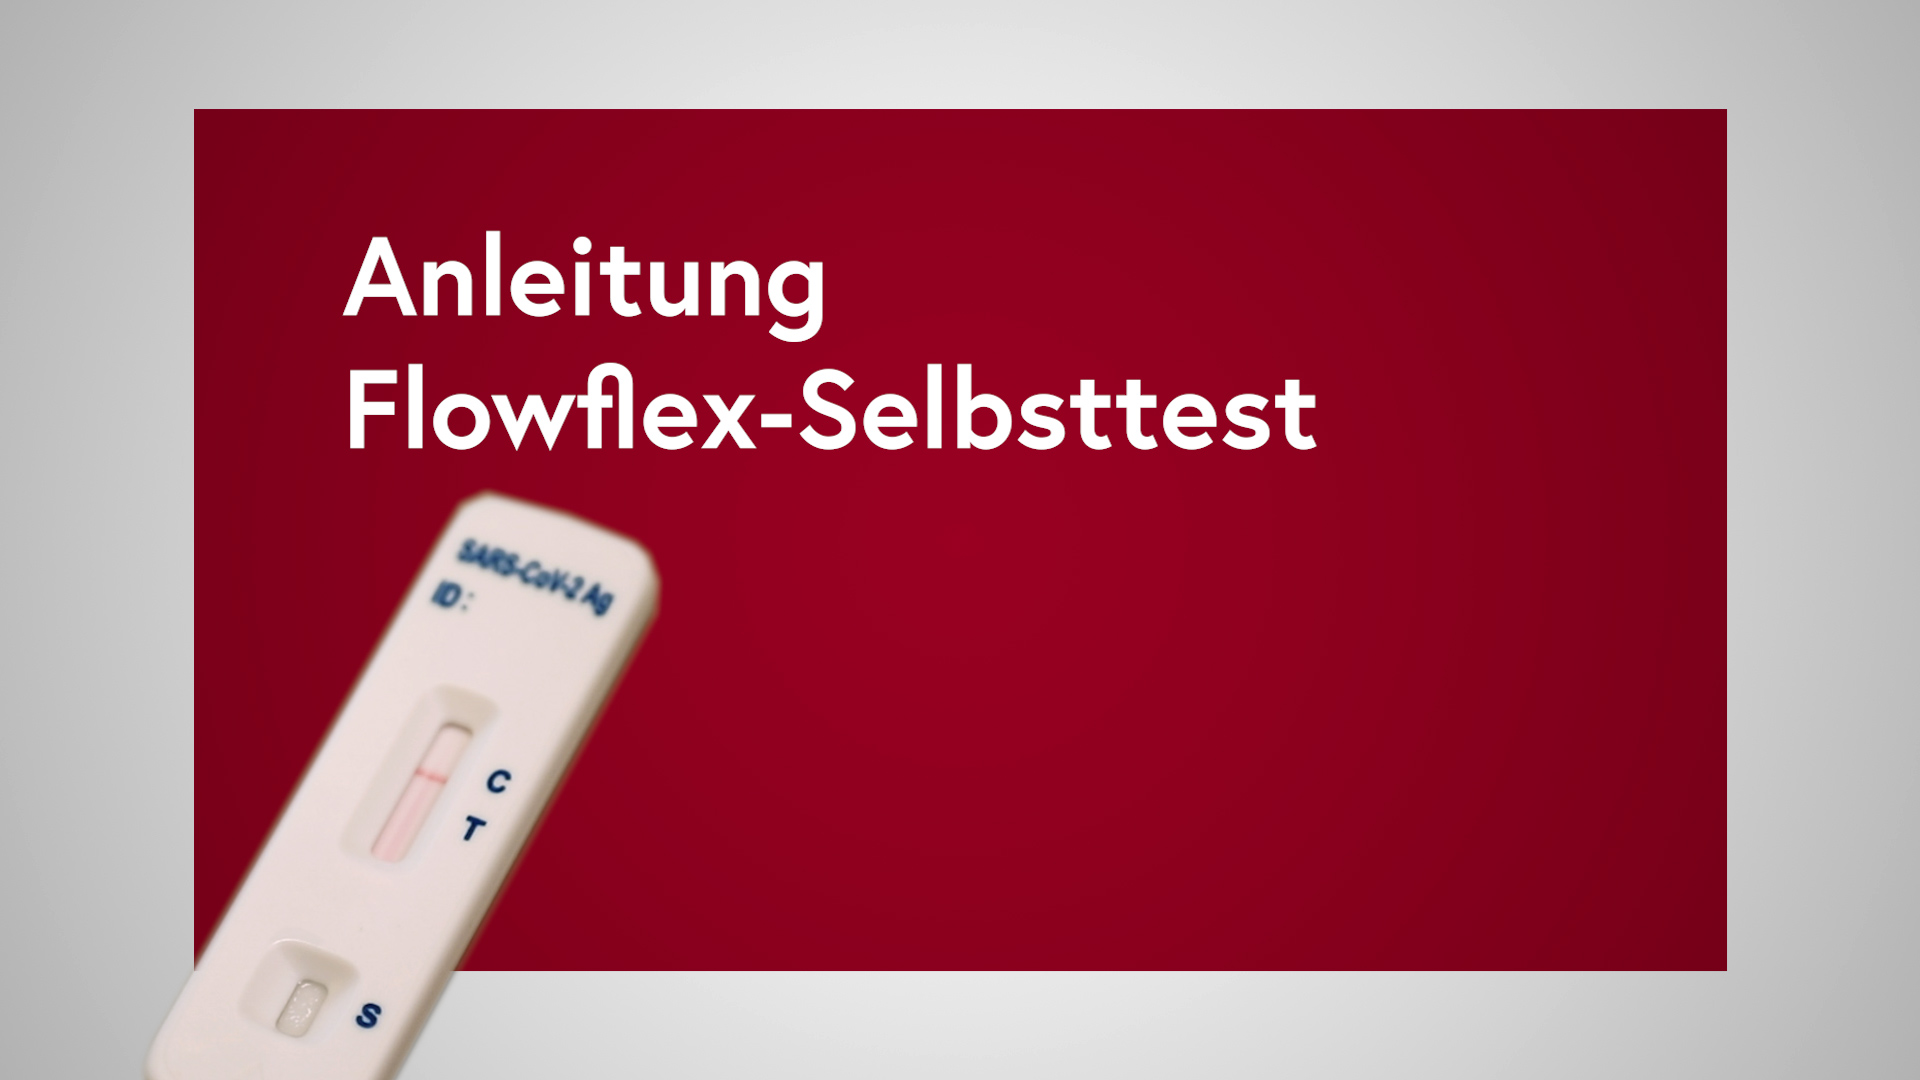 Startbild zum Video: Anleitung Flowflex-Selbsttest